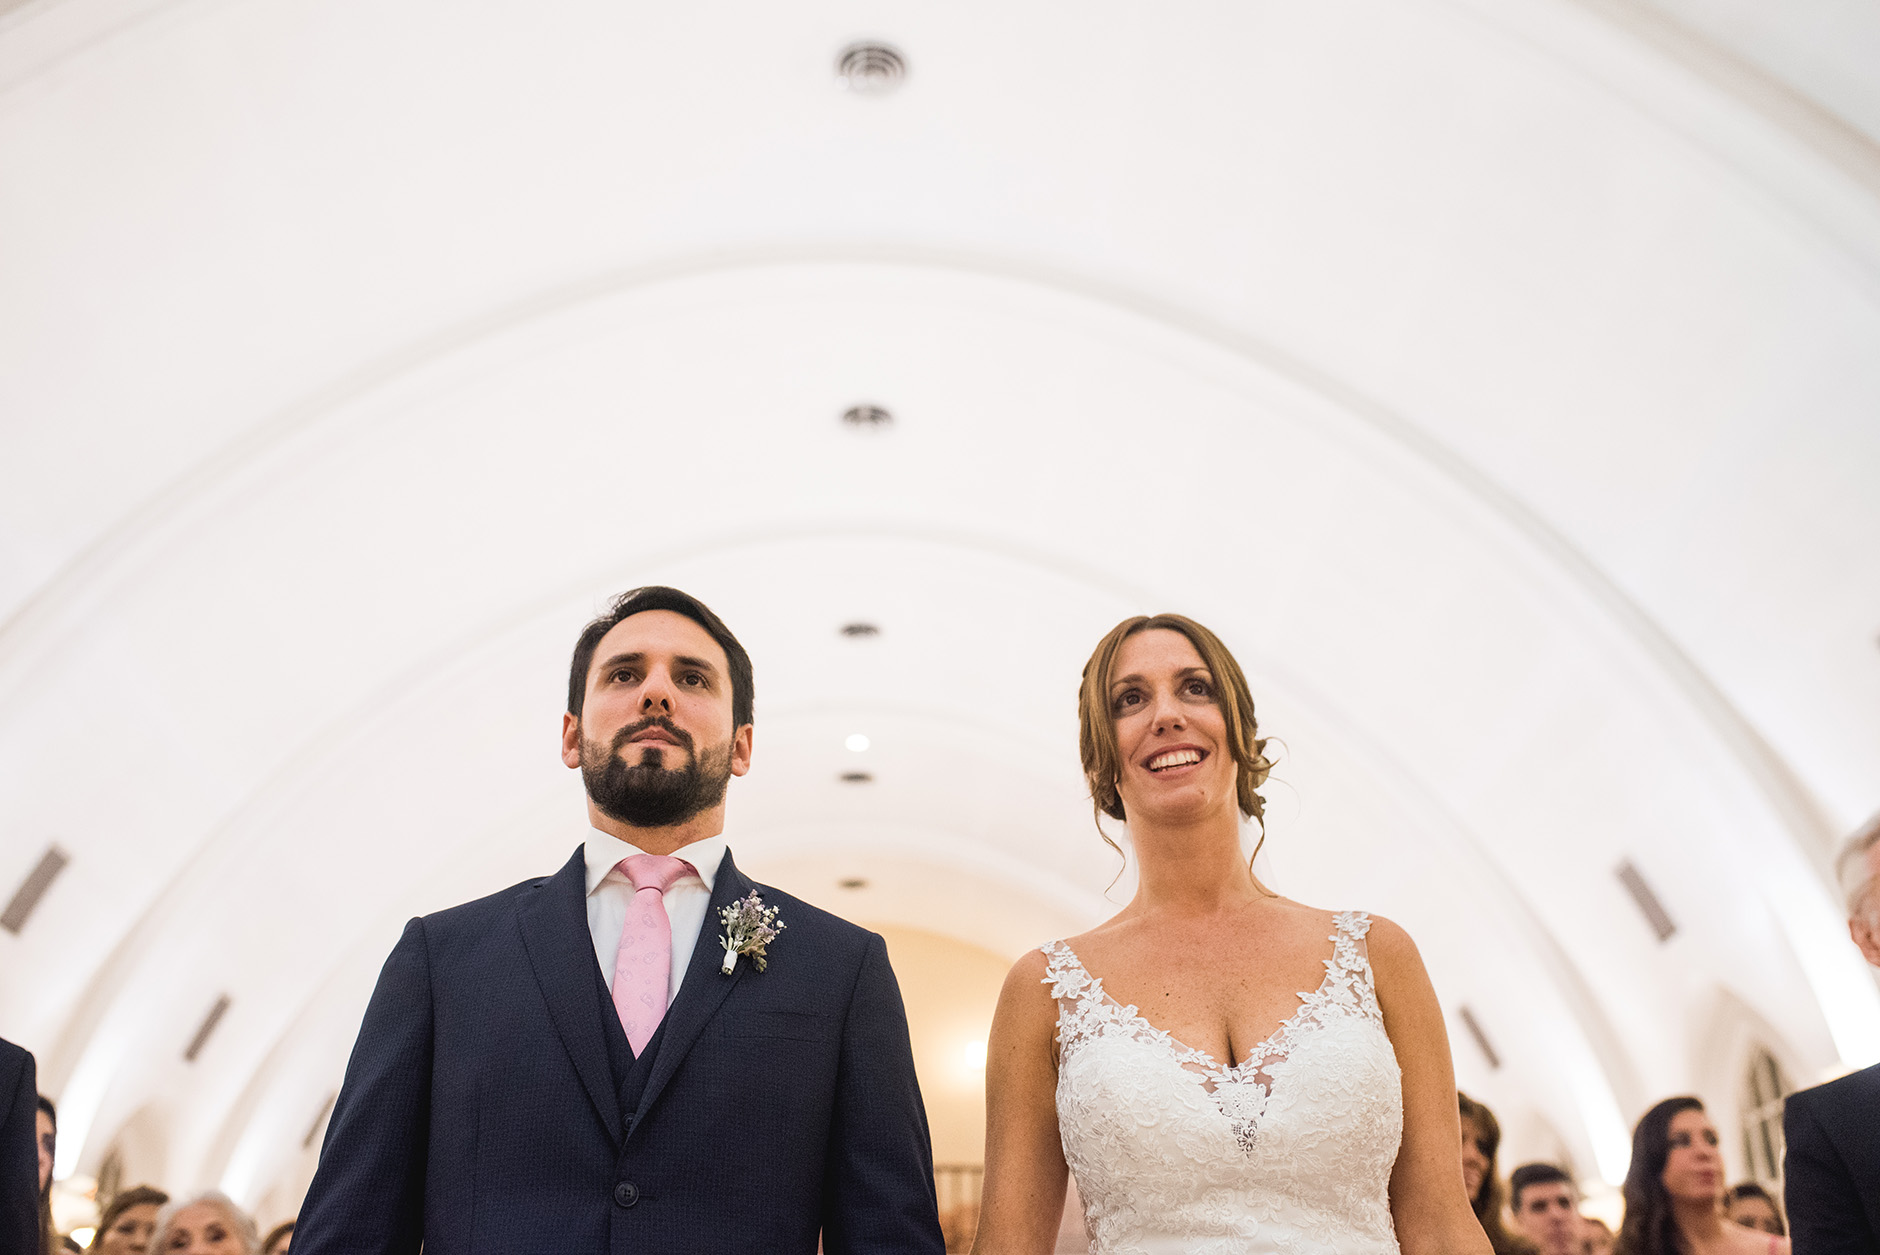 Fotos de la boda de Caro y Rodri en la Arbolada Rosario por Bucle Fotografias Flor Bosio y Caro Clerici